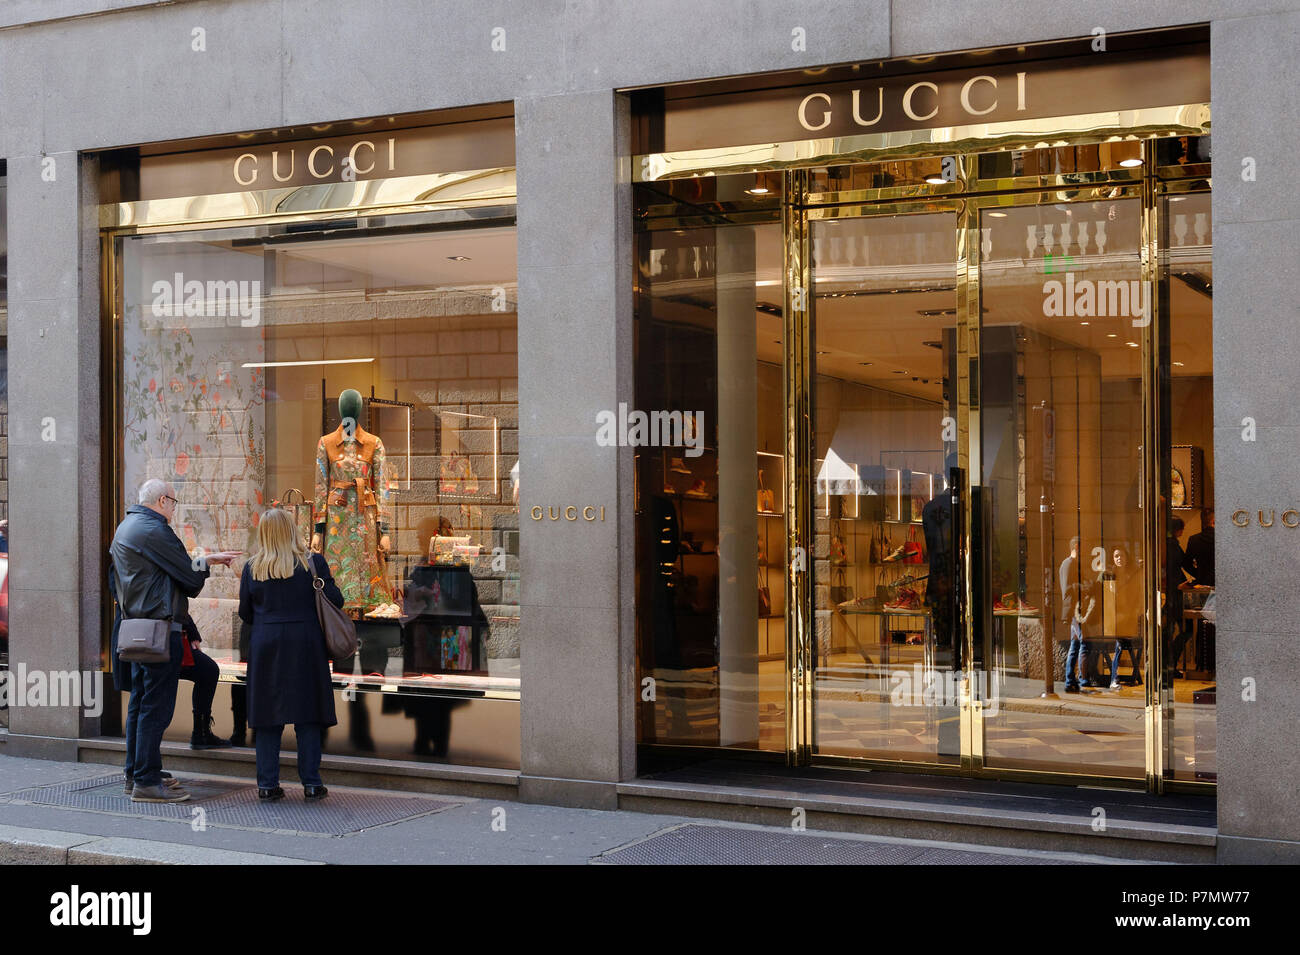 Italy, Lombardy, Milan, Fashion Quadrilateral, Gucci store in Via Monte  Napoleone Stock Photo - Alamy